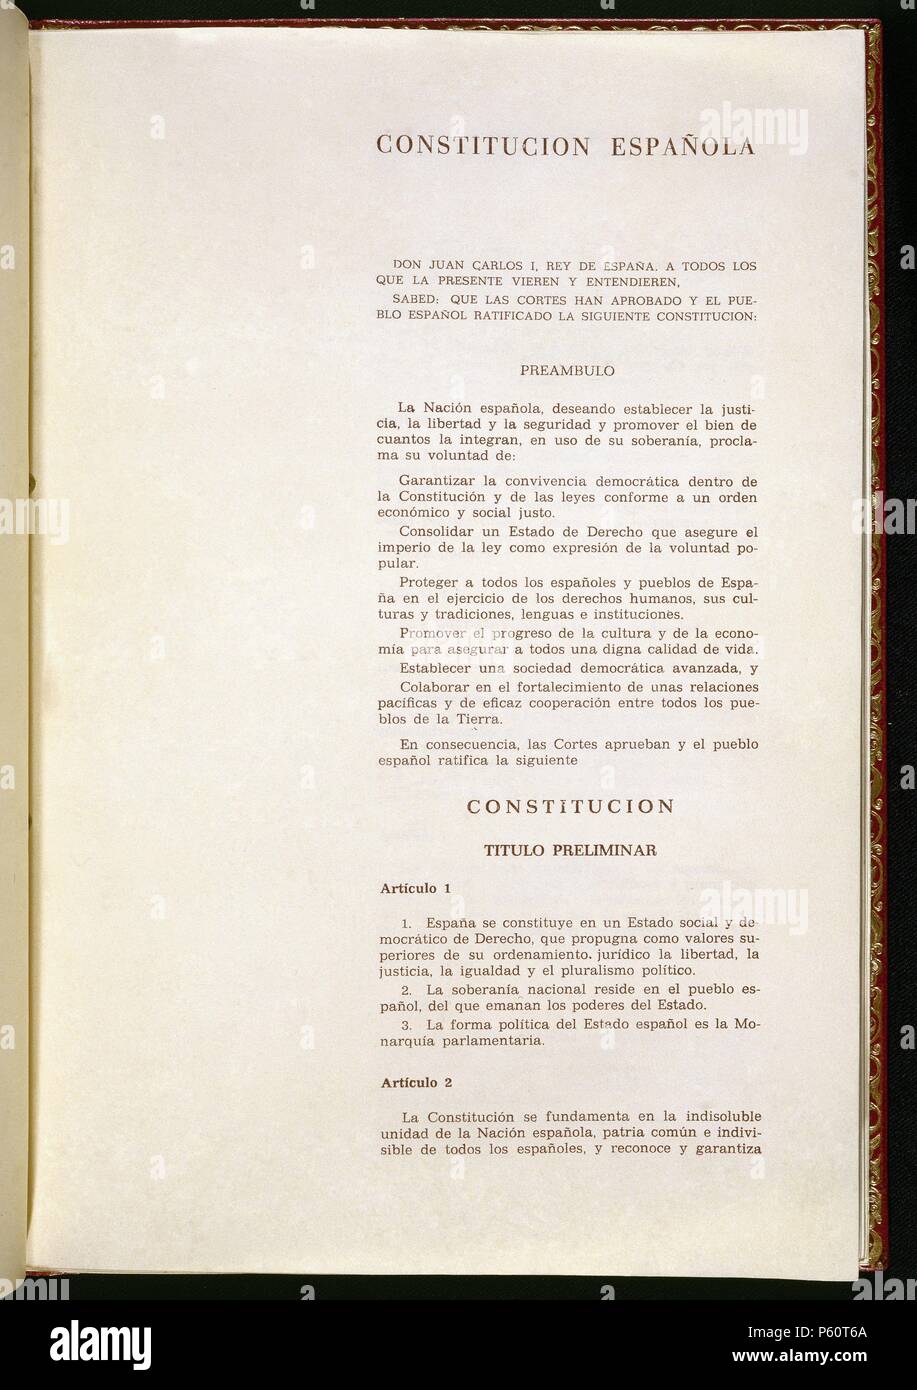 PRIMERA PAGINA DE LA CONSTITUCION ESPAÑOLA DE 1978. Location: CONGRESO DE LOS DIPUTADOS-BIBLIOTECA, MADRID, SPAIN. Stock Photo